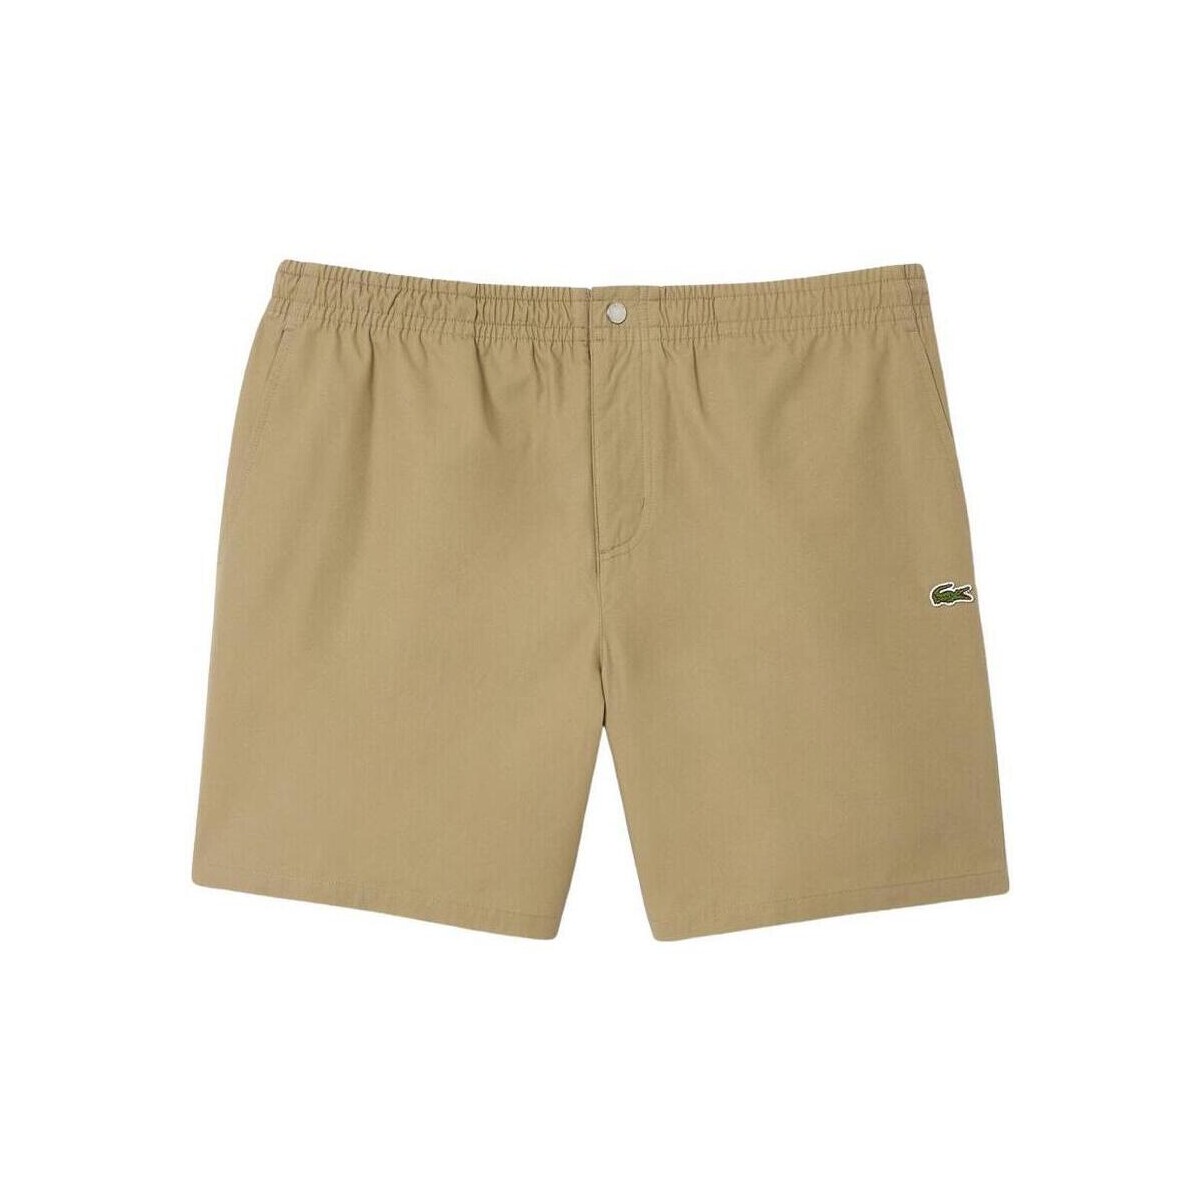 Vêtements Homme Shorts / Bermudas Lacoste  Beige